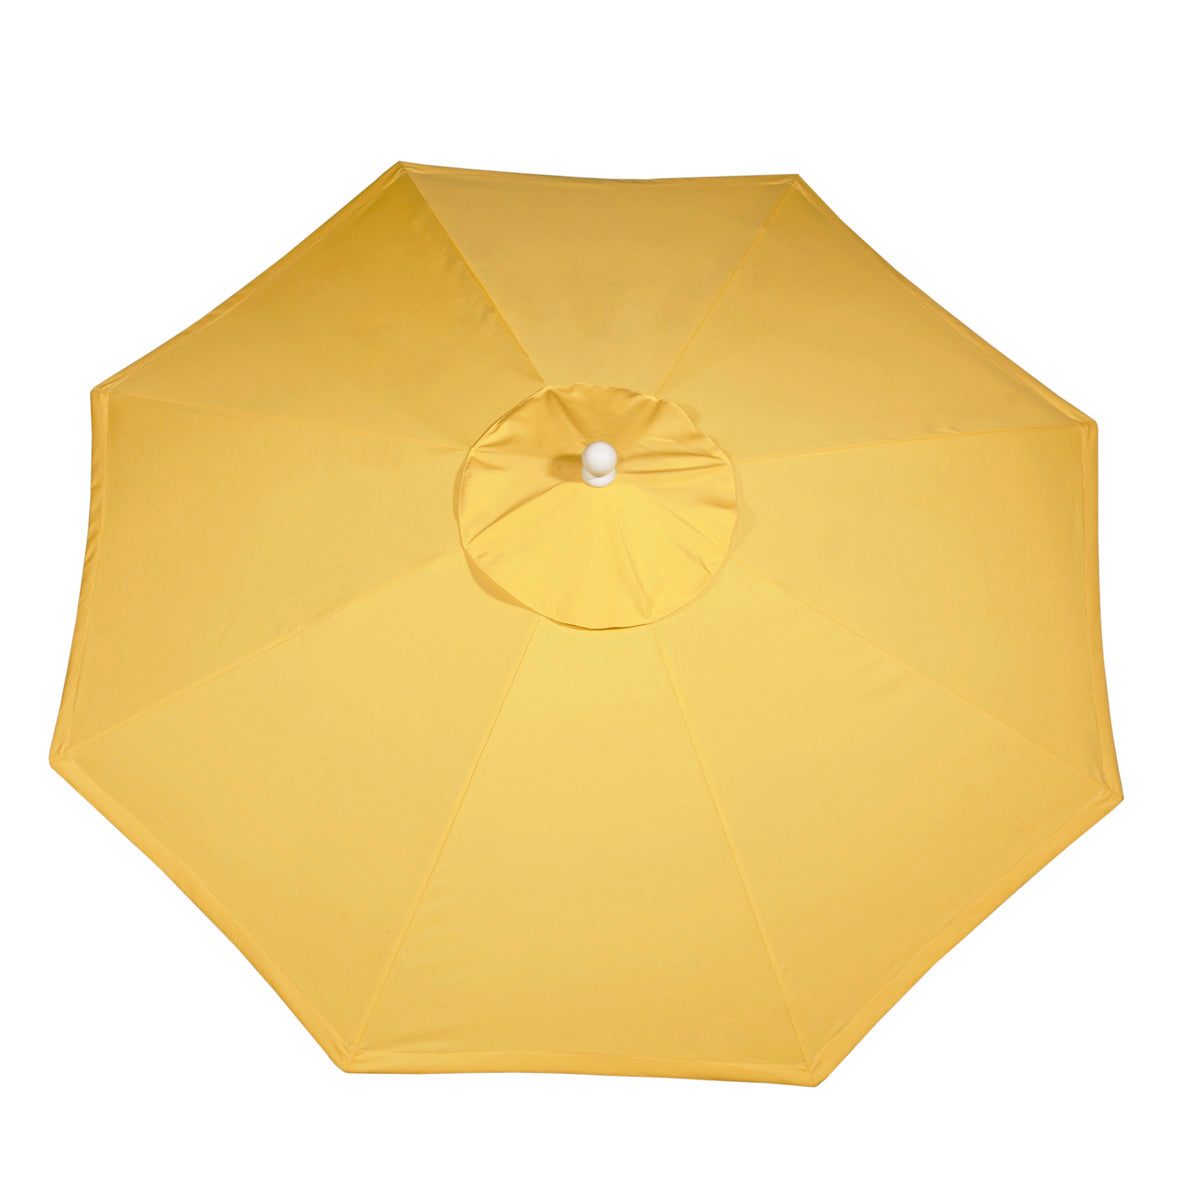 Luxcraft Umbrella 9MU